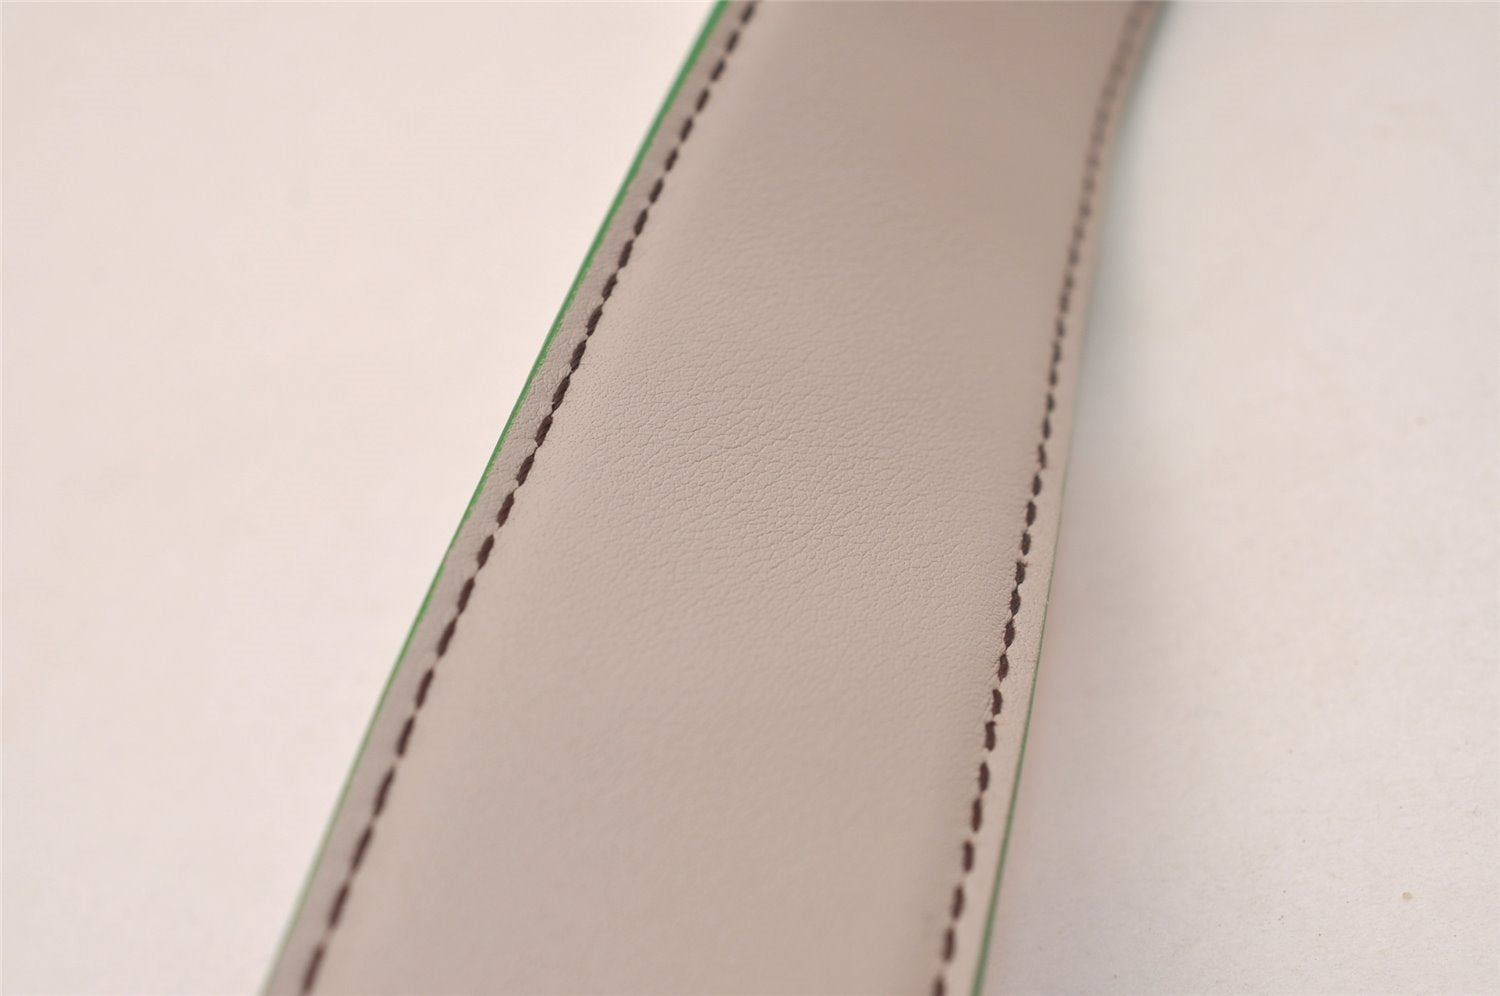 Authentic FENDI Shoulder Strap You Studs Leather 90cm 35.4